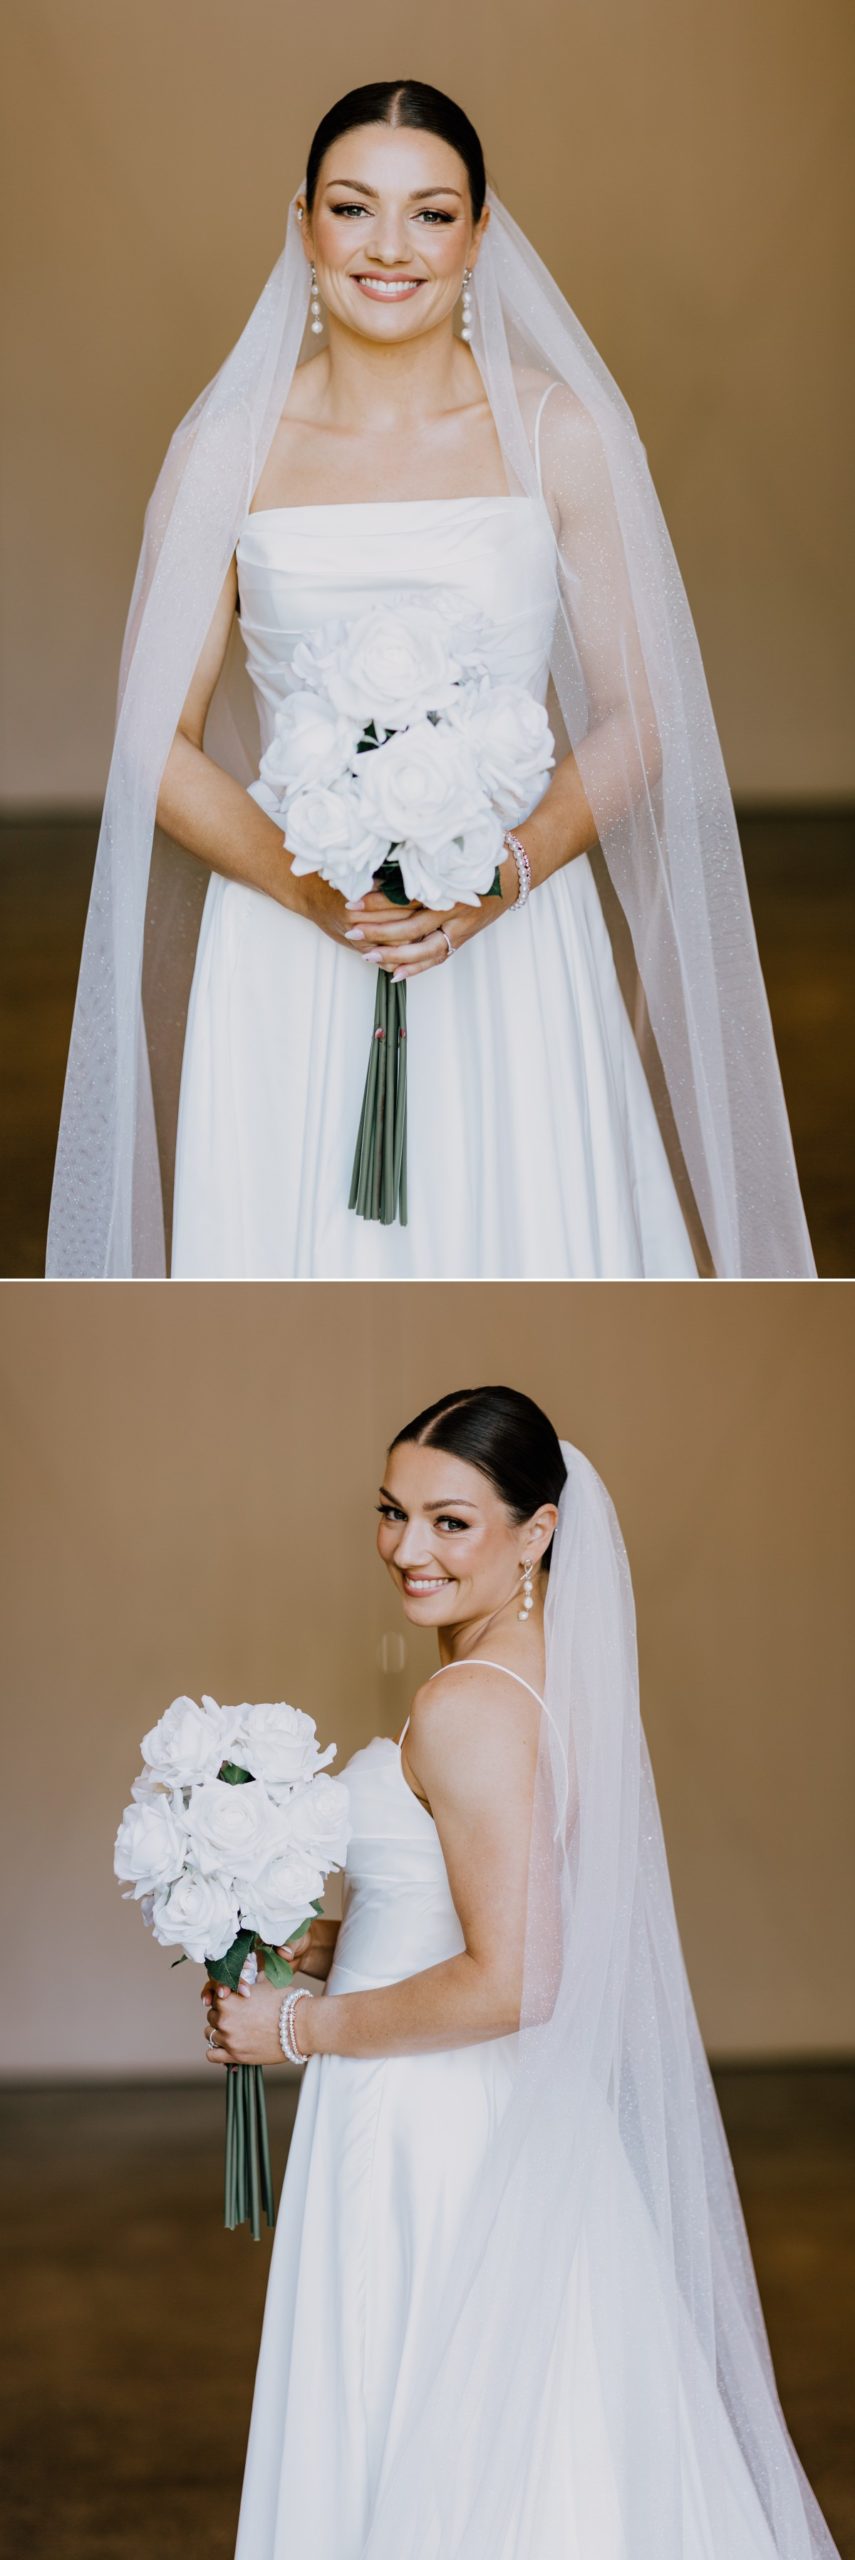 wedding photos of the bride